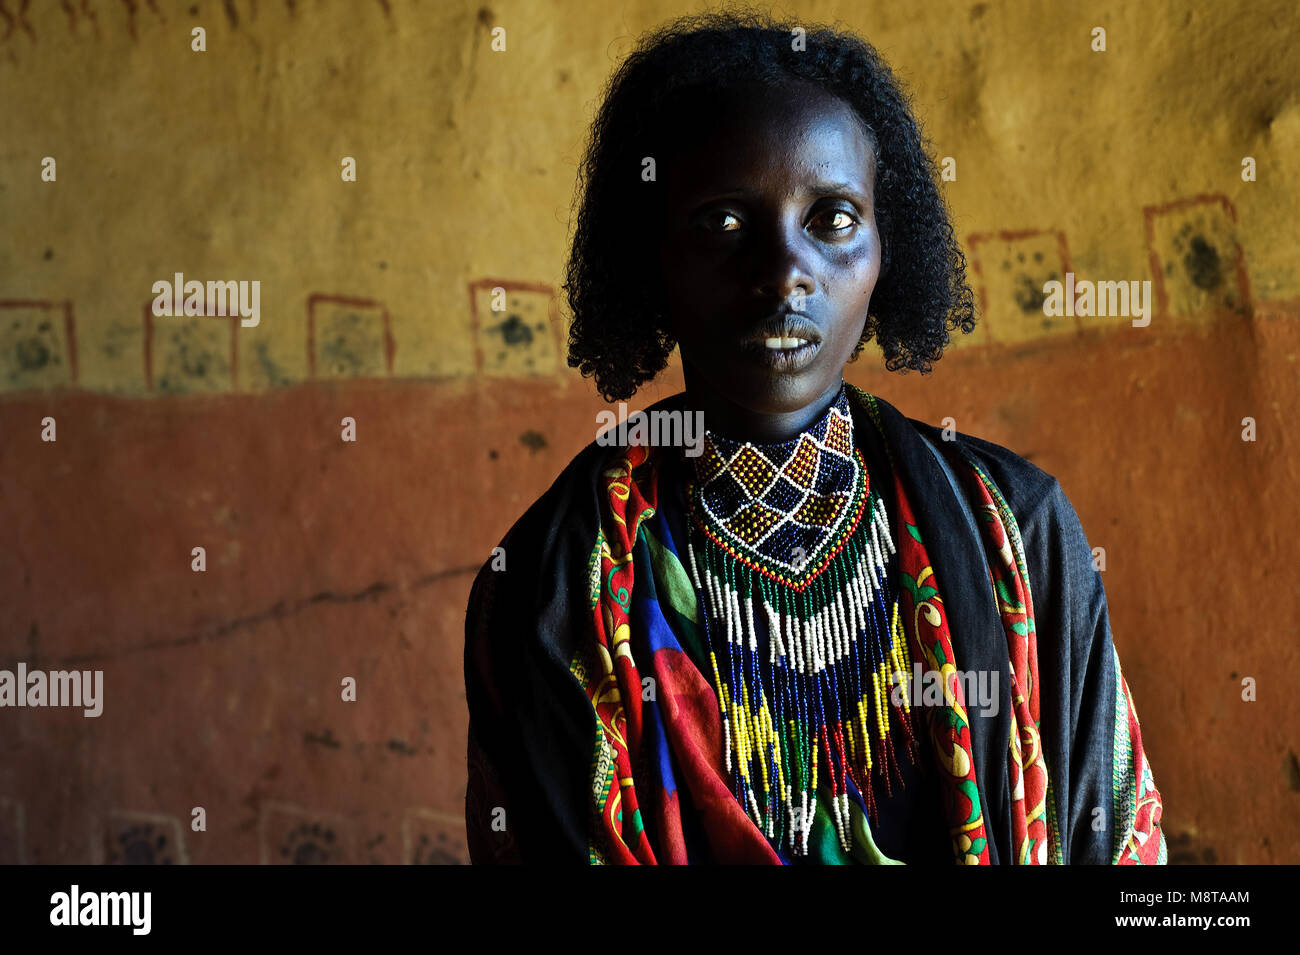 Woman from the Borana tribe ( Ethiopia) Stock Photo